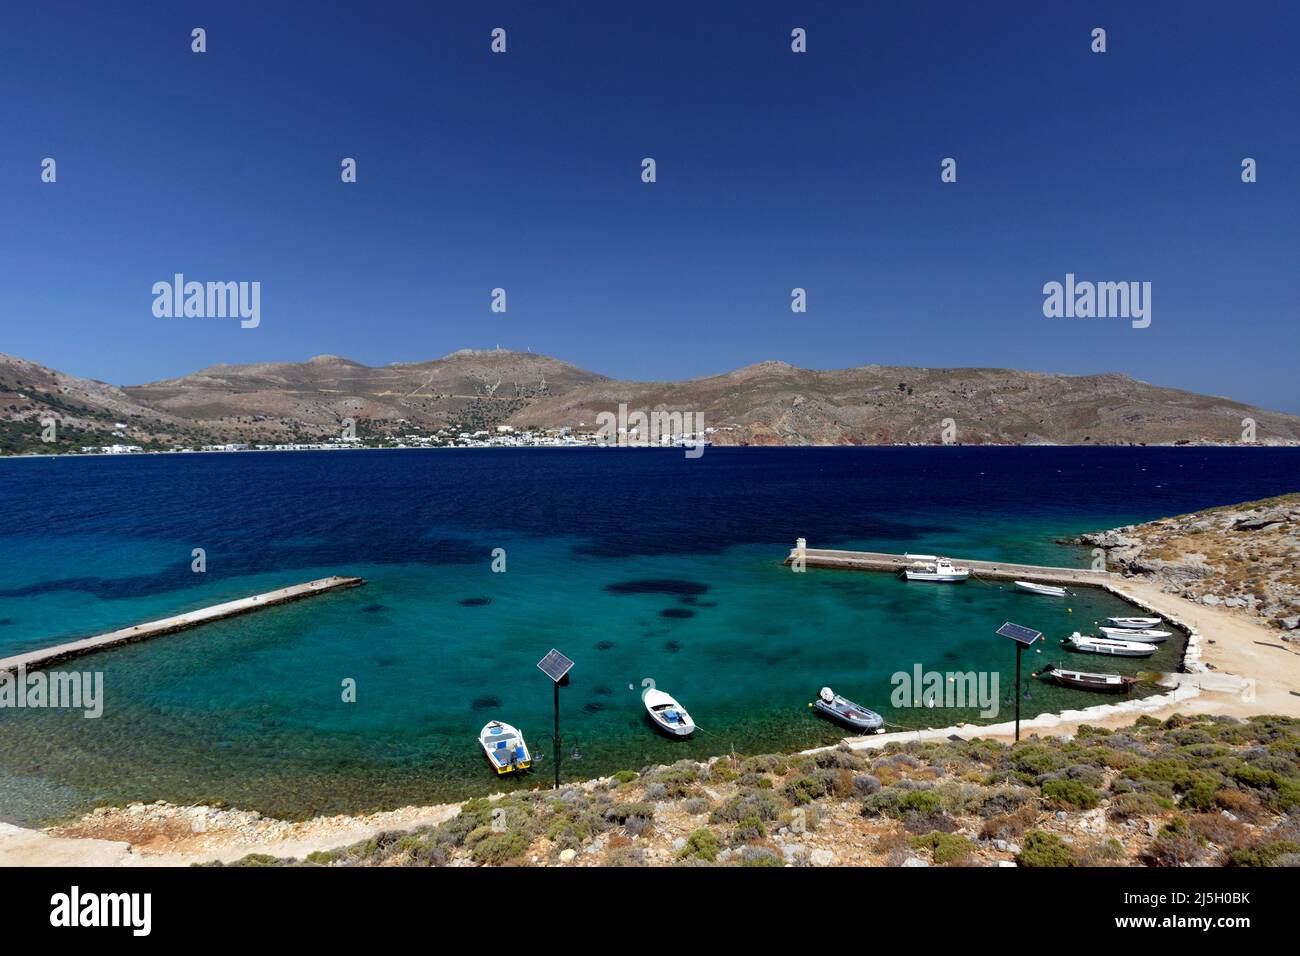 Puerto de Aghios Sephanos y Livadia, Tilos, Islas Dodecanesas, sur del Egeo, Grecia. Foto de stock